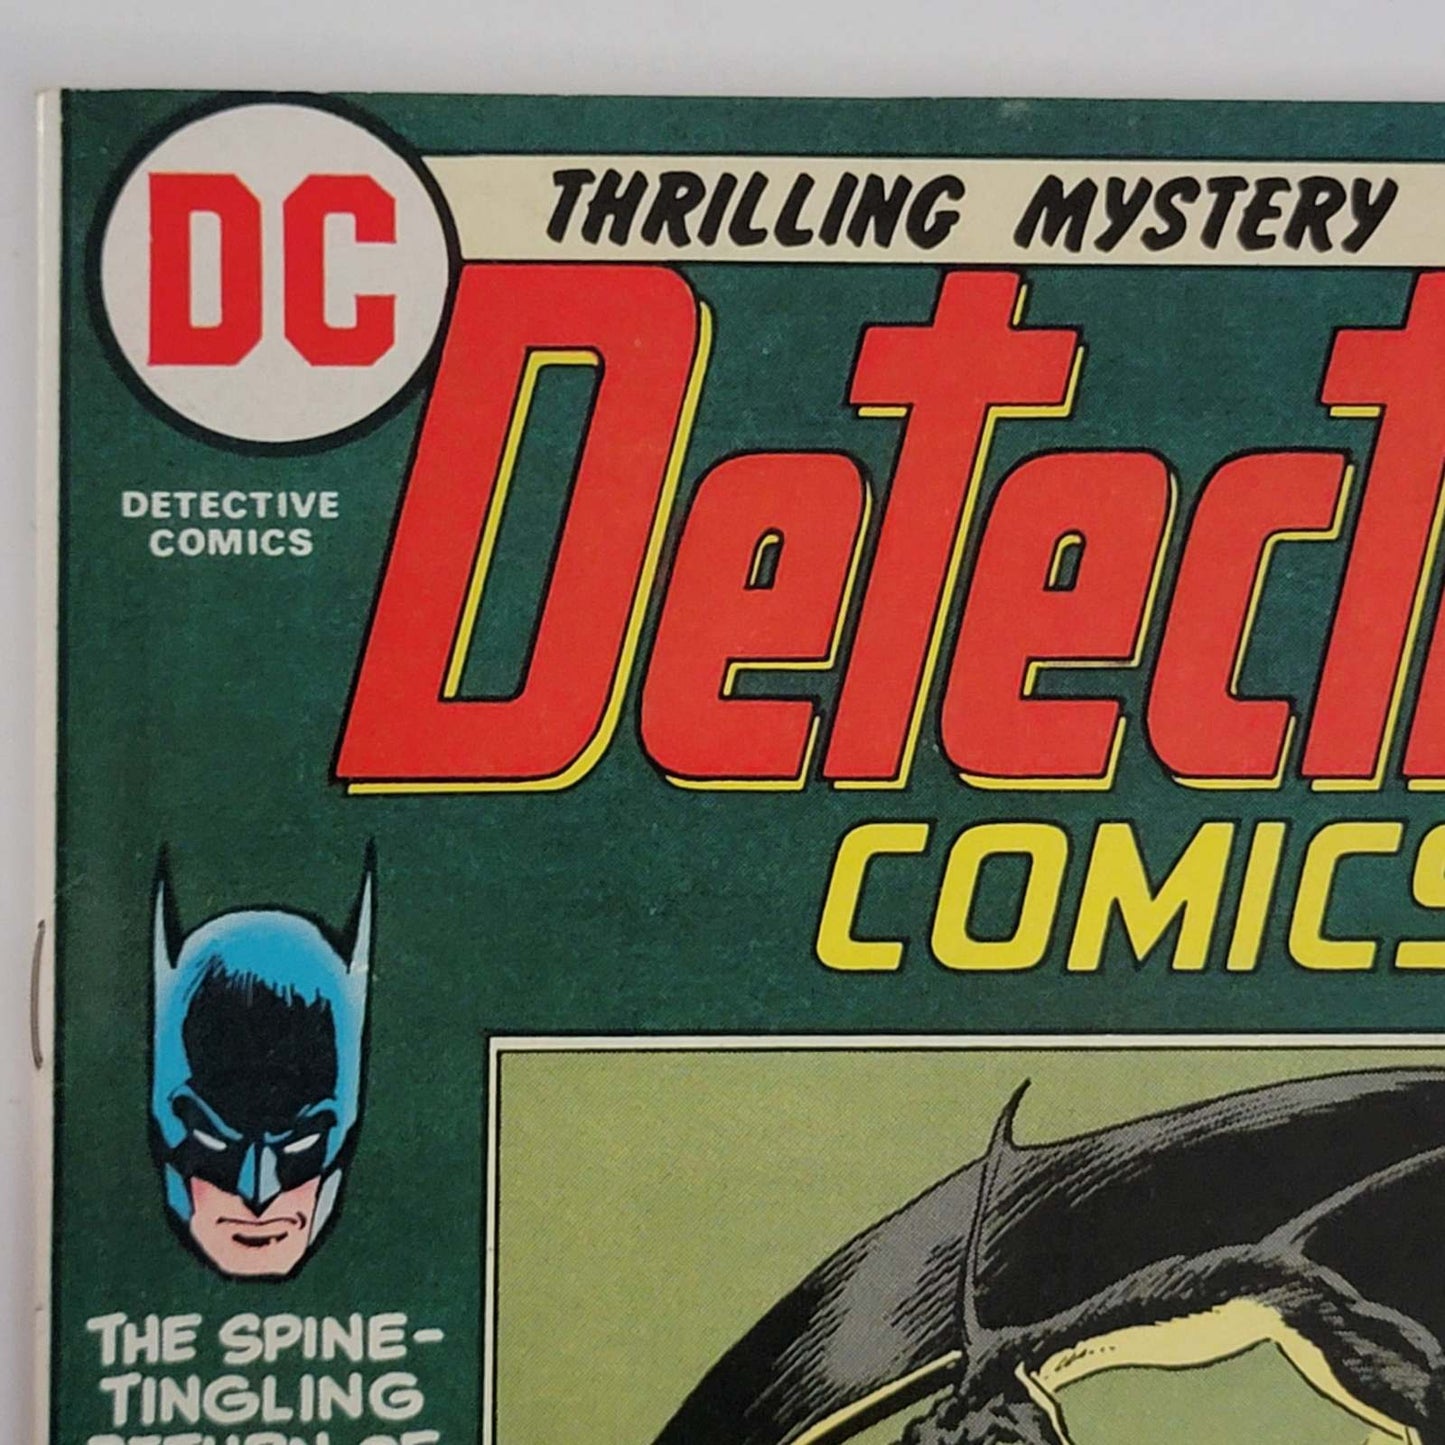 Detective Comics Vol 1 #0429 "Man-Bat over Vegas"